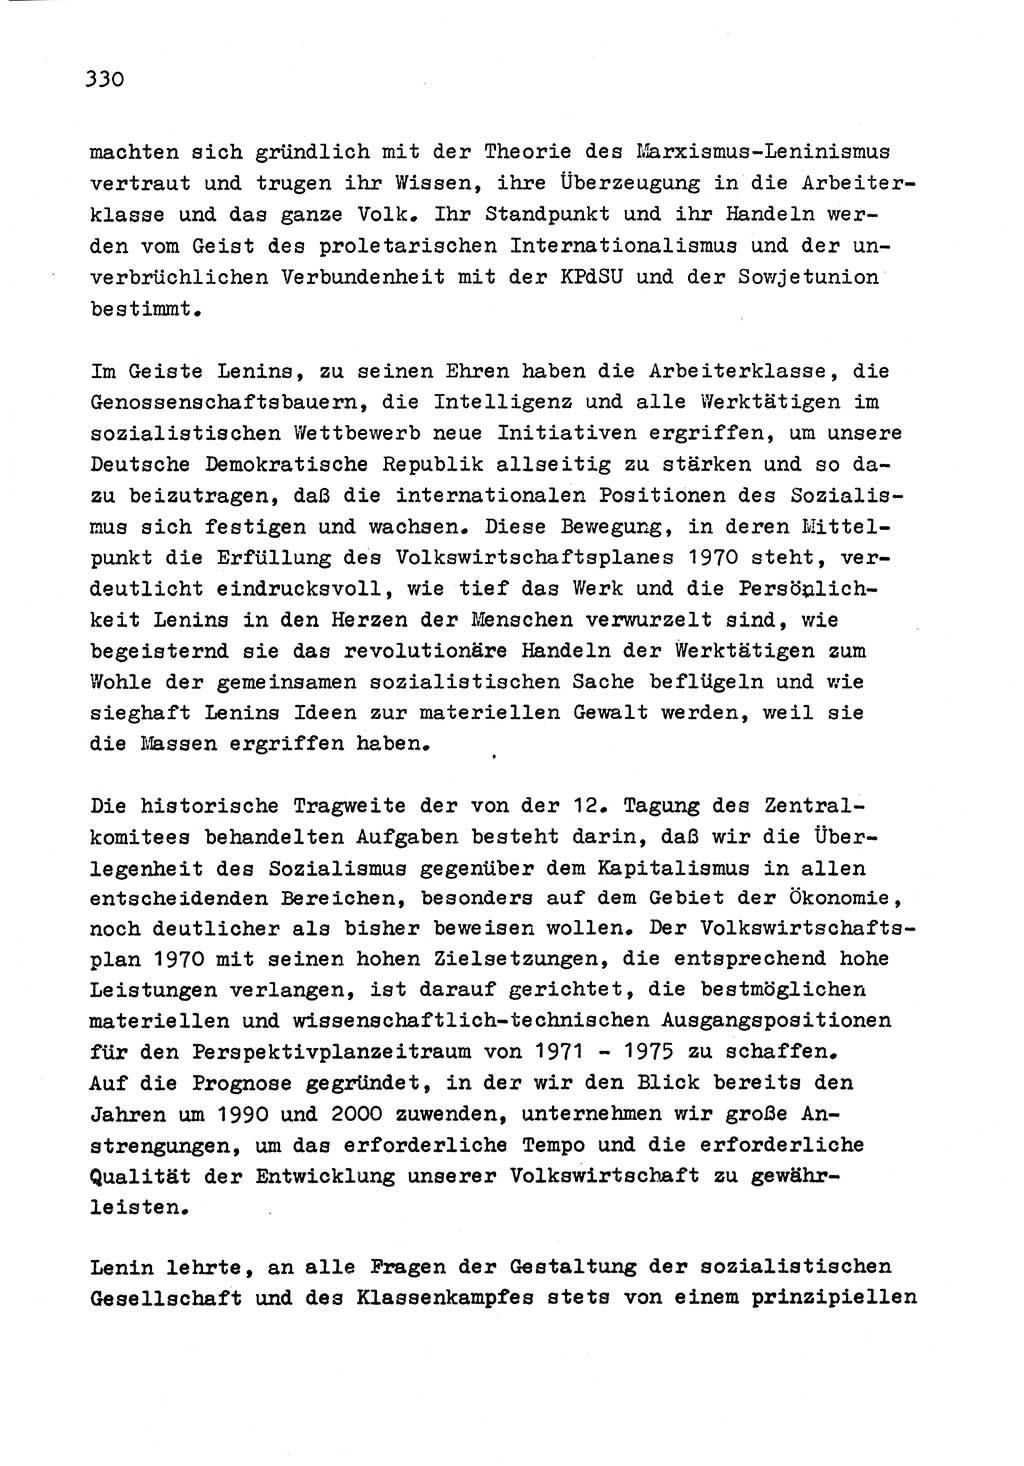 Zu Fragen der Parteiarbeit [Sozialistische Einheitspartei Deutschlands (SED) Deutsche Demokratische Republik (DDR)] 1979, Seite 330 (Fr. PA SED DDR 1979, S. 330)